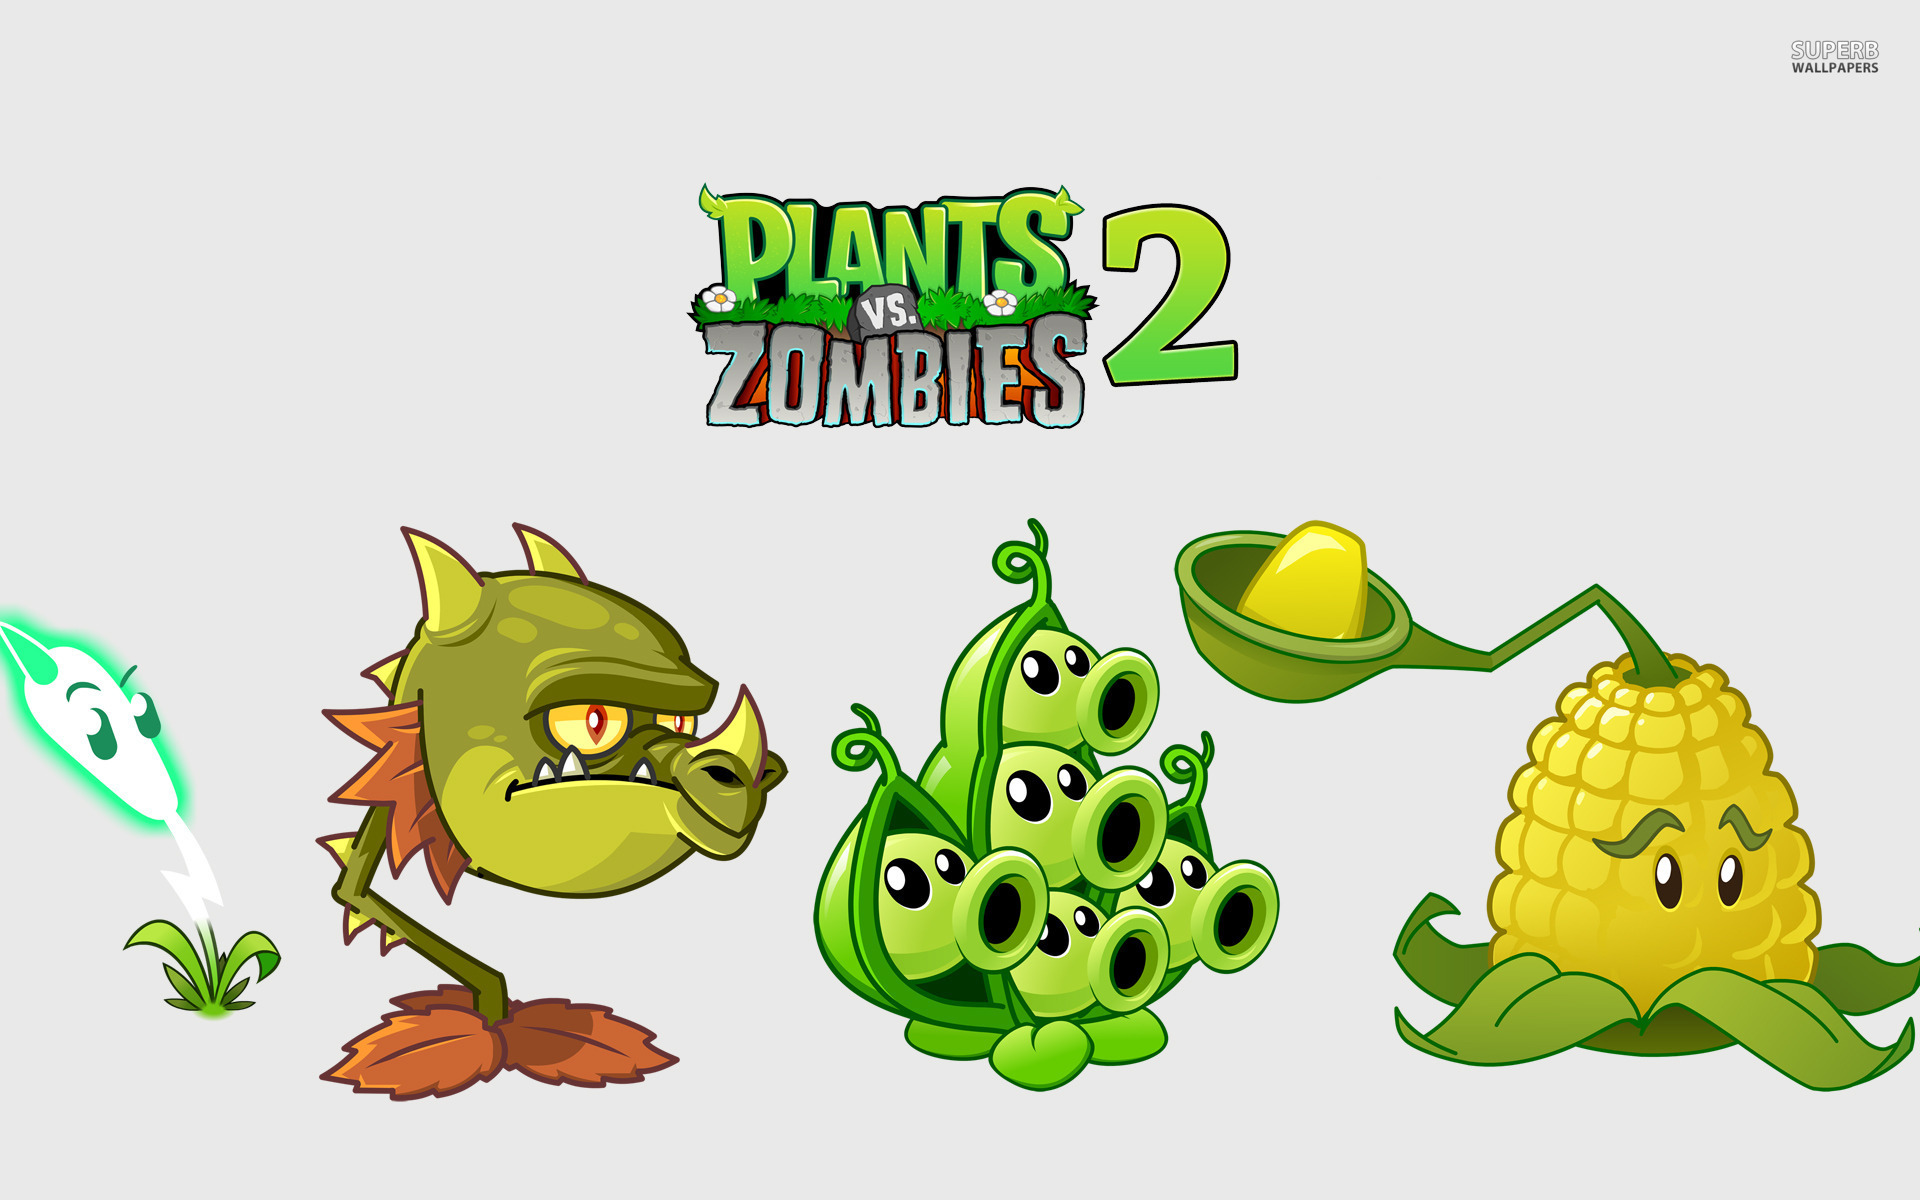 Pvz 2 plants zombie. Растения против зомби 2 спрайты. ПВЗ 2 зомби. Растения из растения против зомби 2. Инферно растения против зомби.